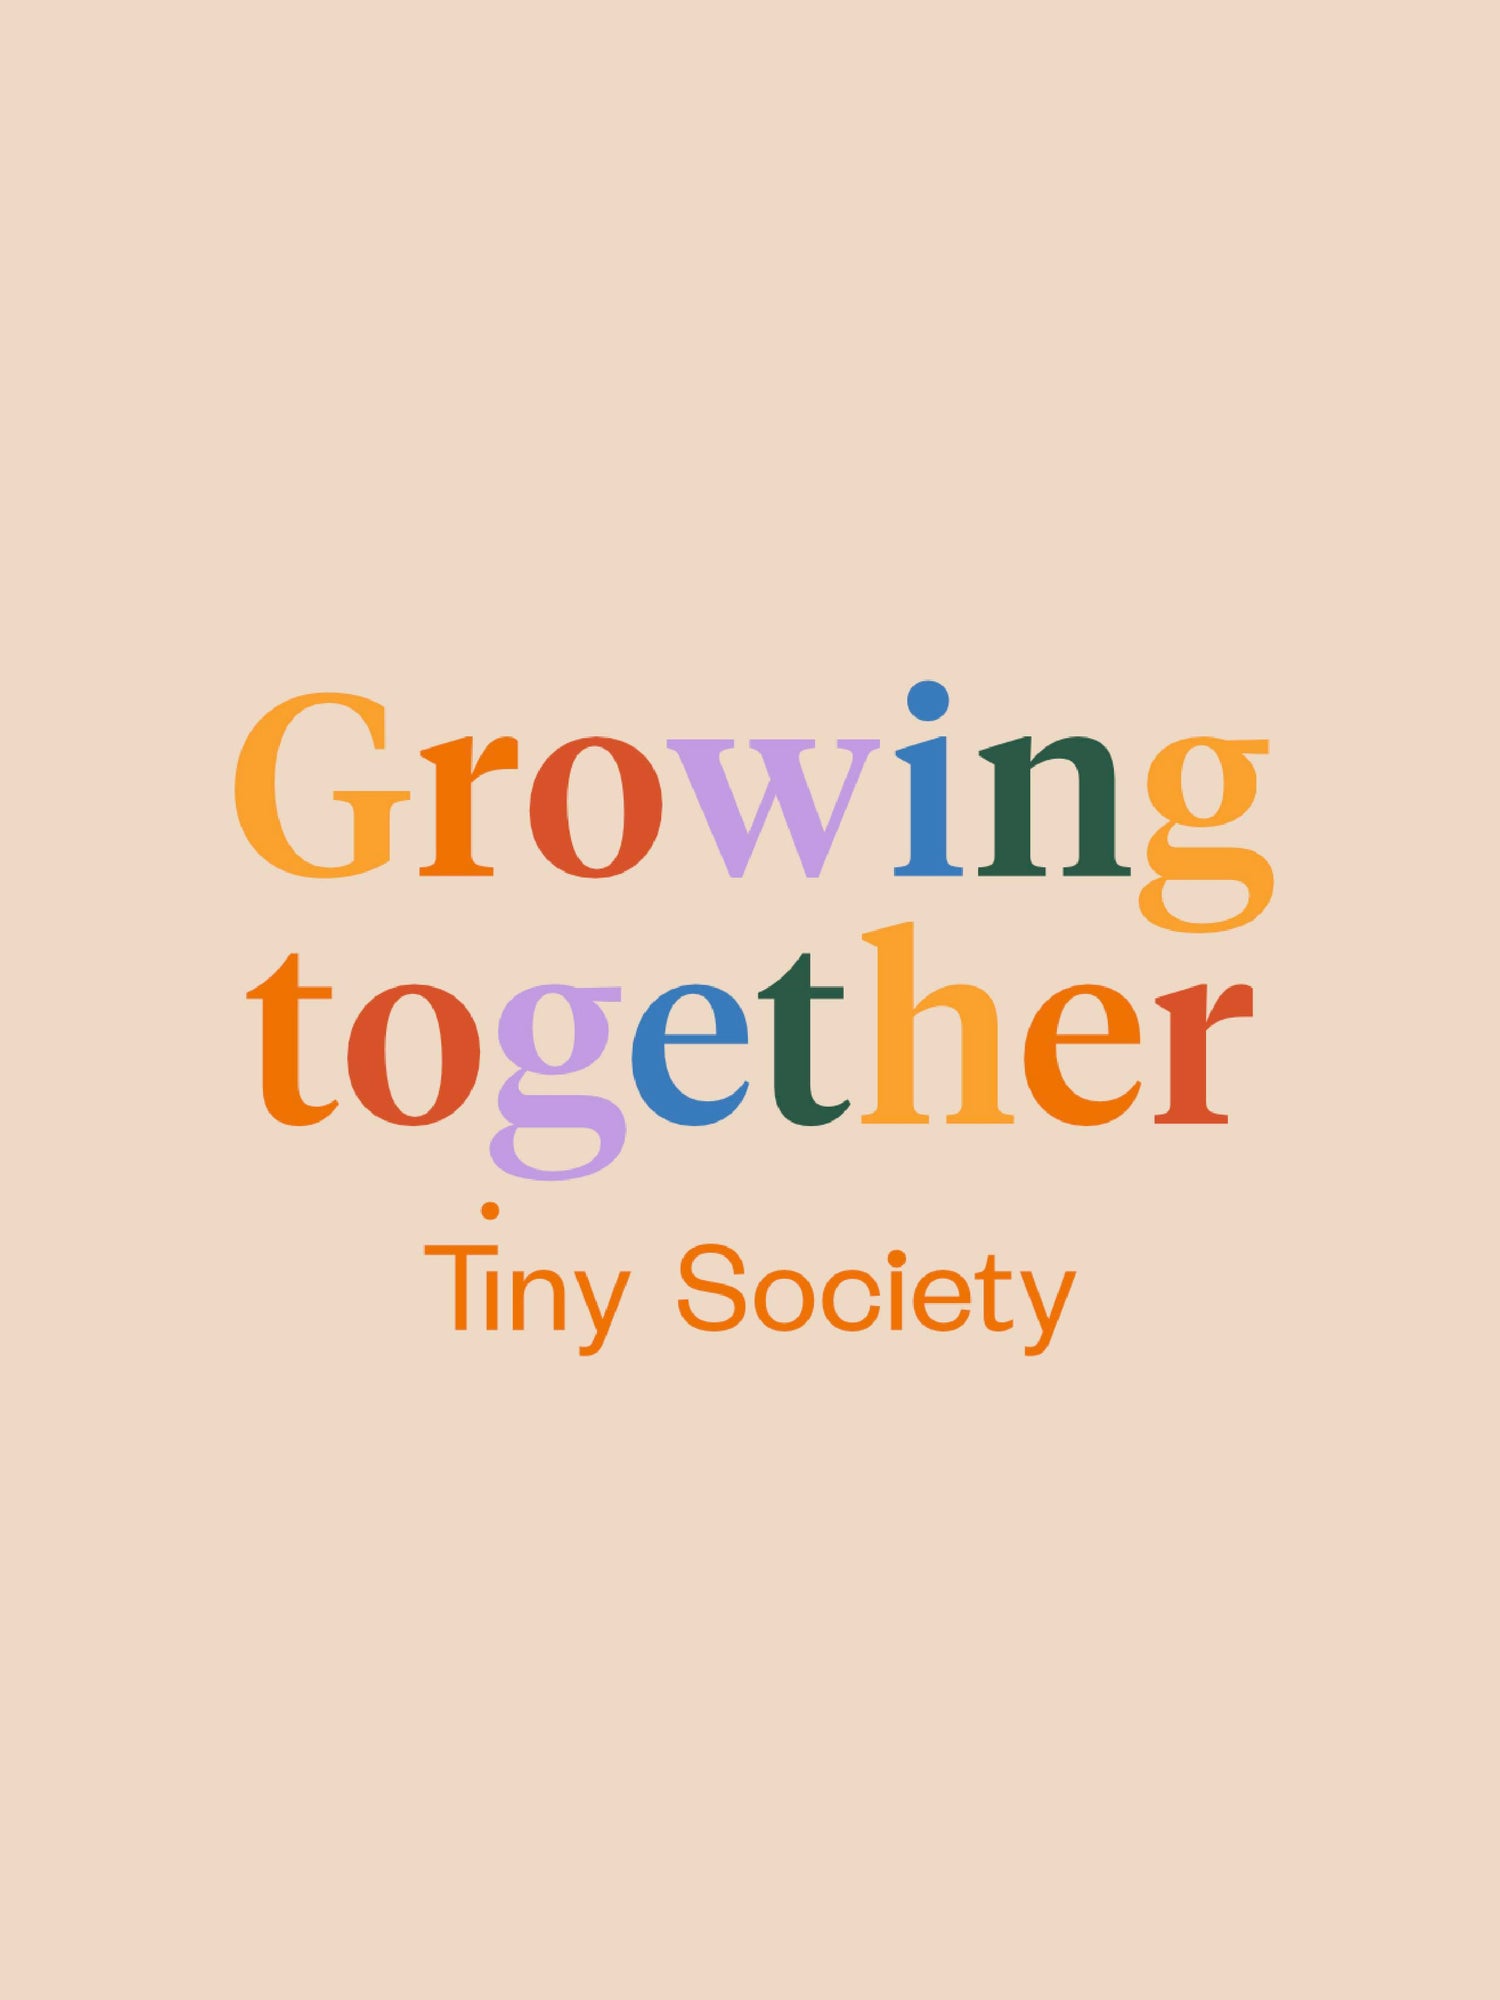 Tiny Society Workshops